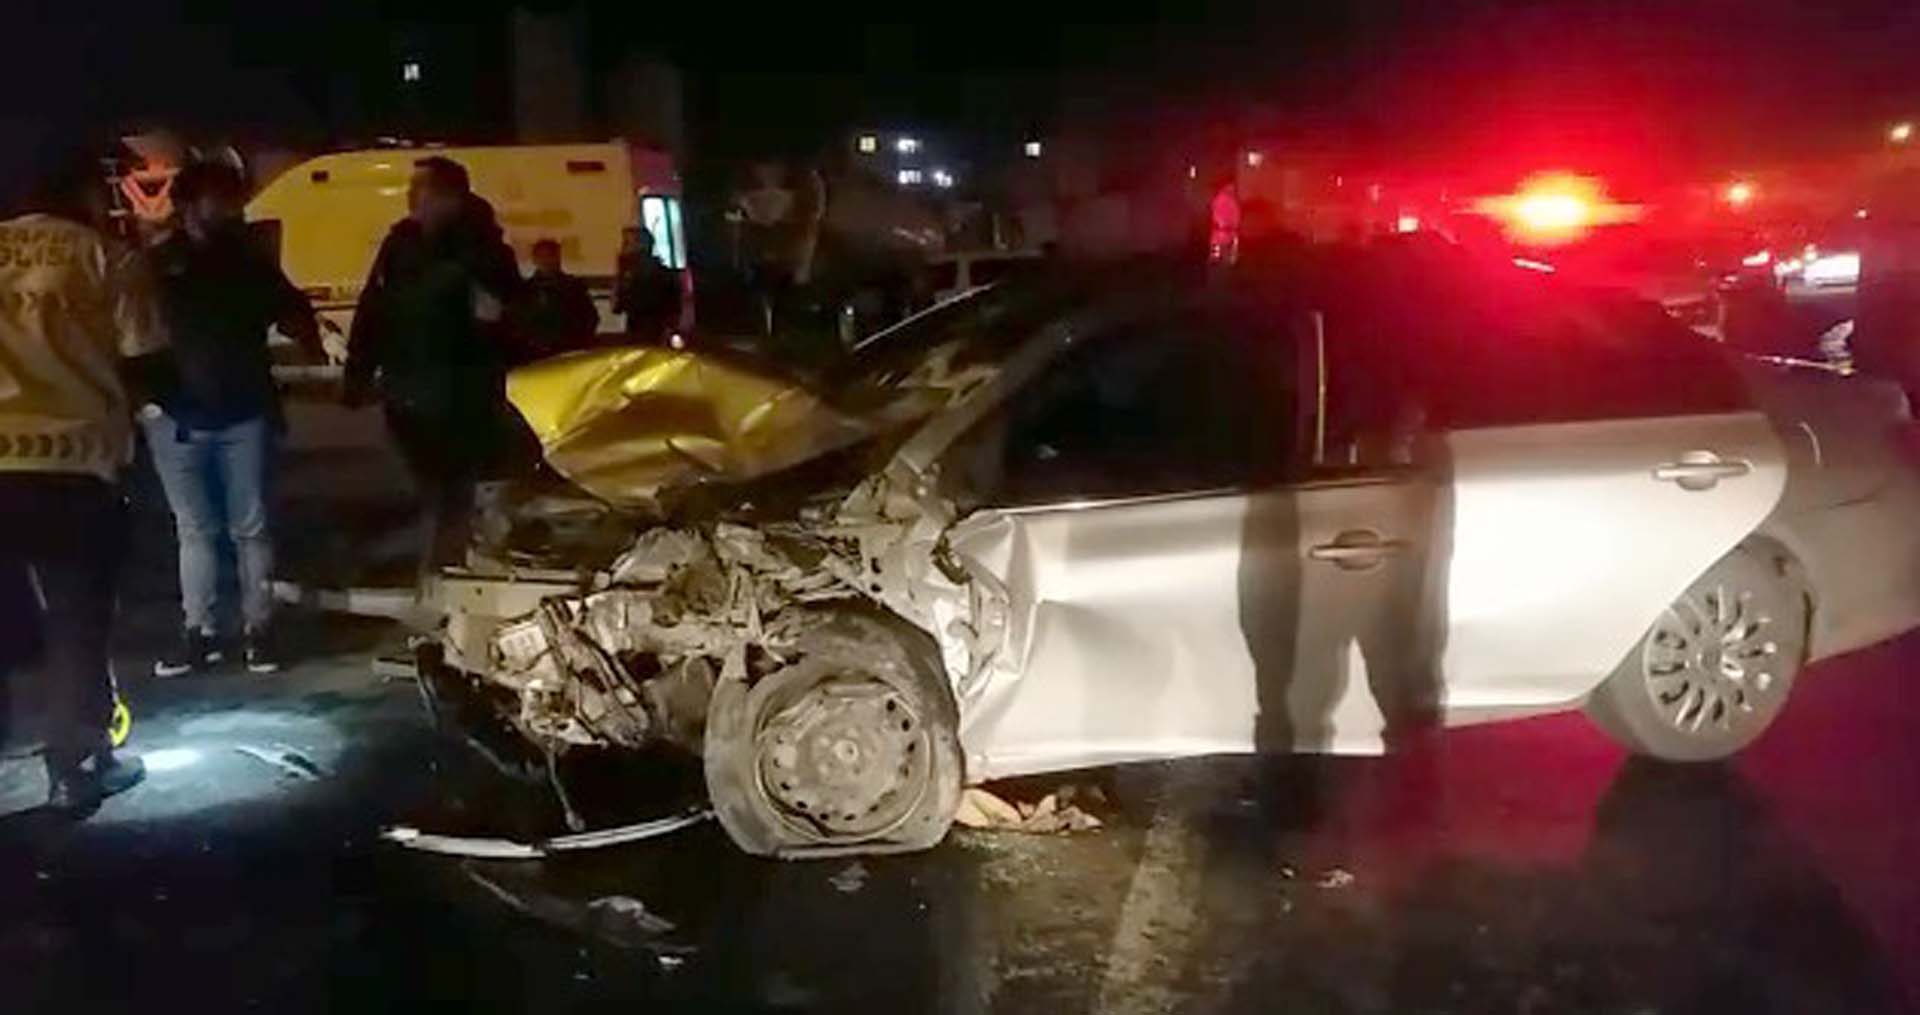 Hakkari'de korkunç kaza! Minibüs ile otomobil çarpıştı: Polis memuru Abdulkadir Kılıç ve Kemal Aslan hayatını kaybetti, 5 yaralı 